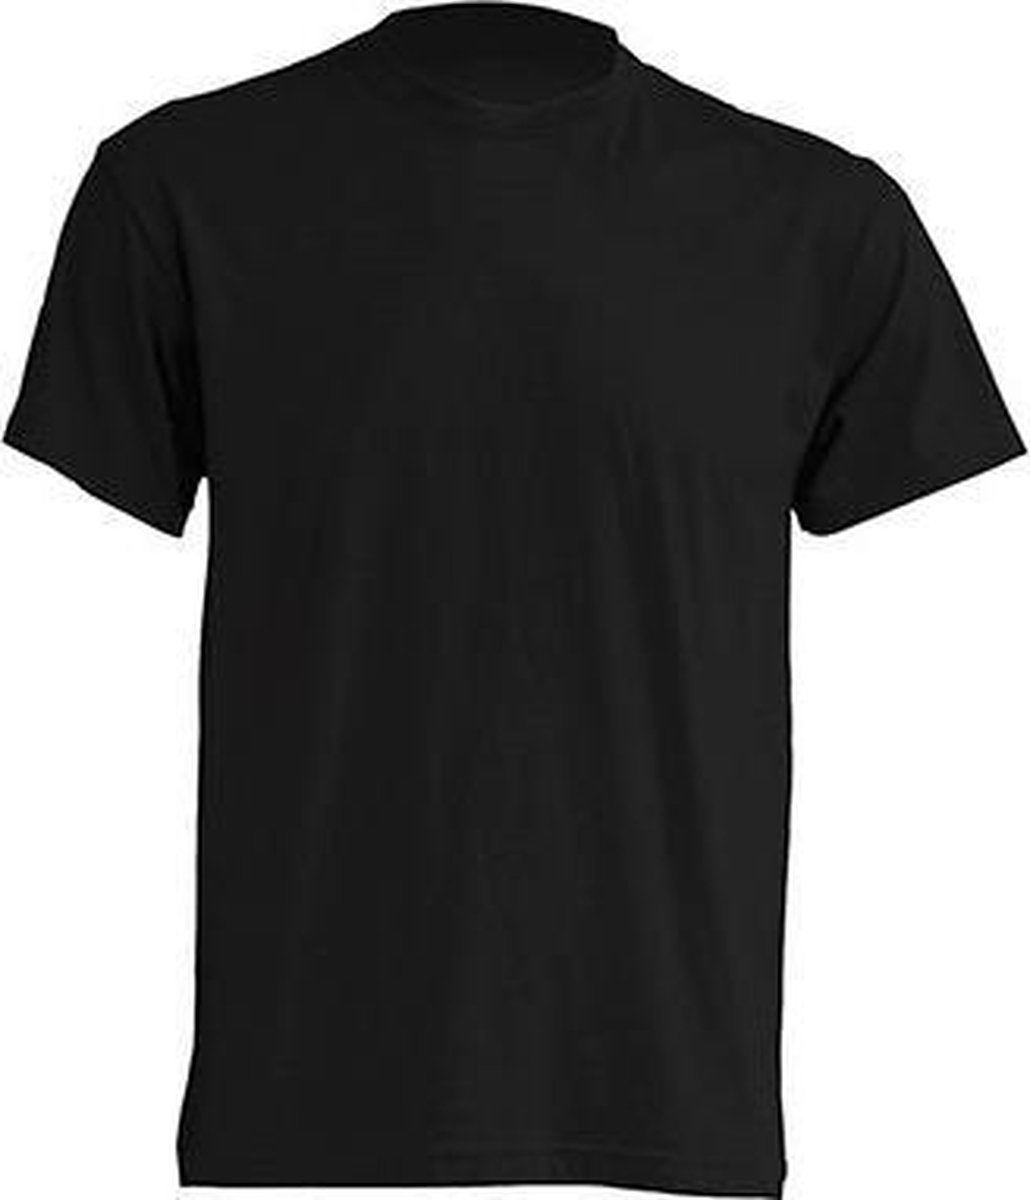 JHK t-shirts kleur zwart maat XS - Set van 5 stuks